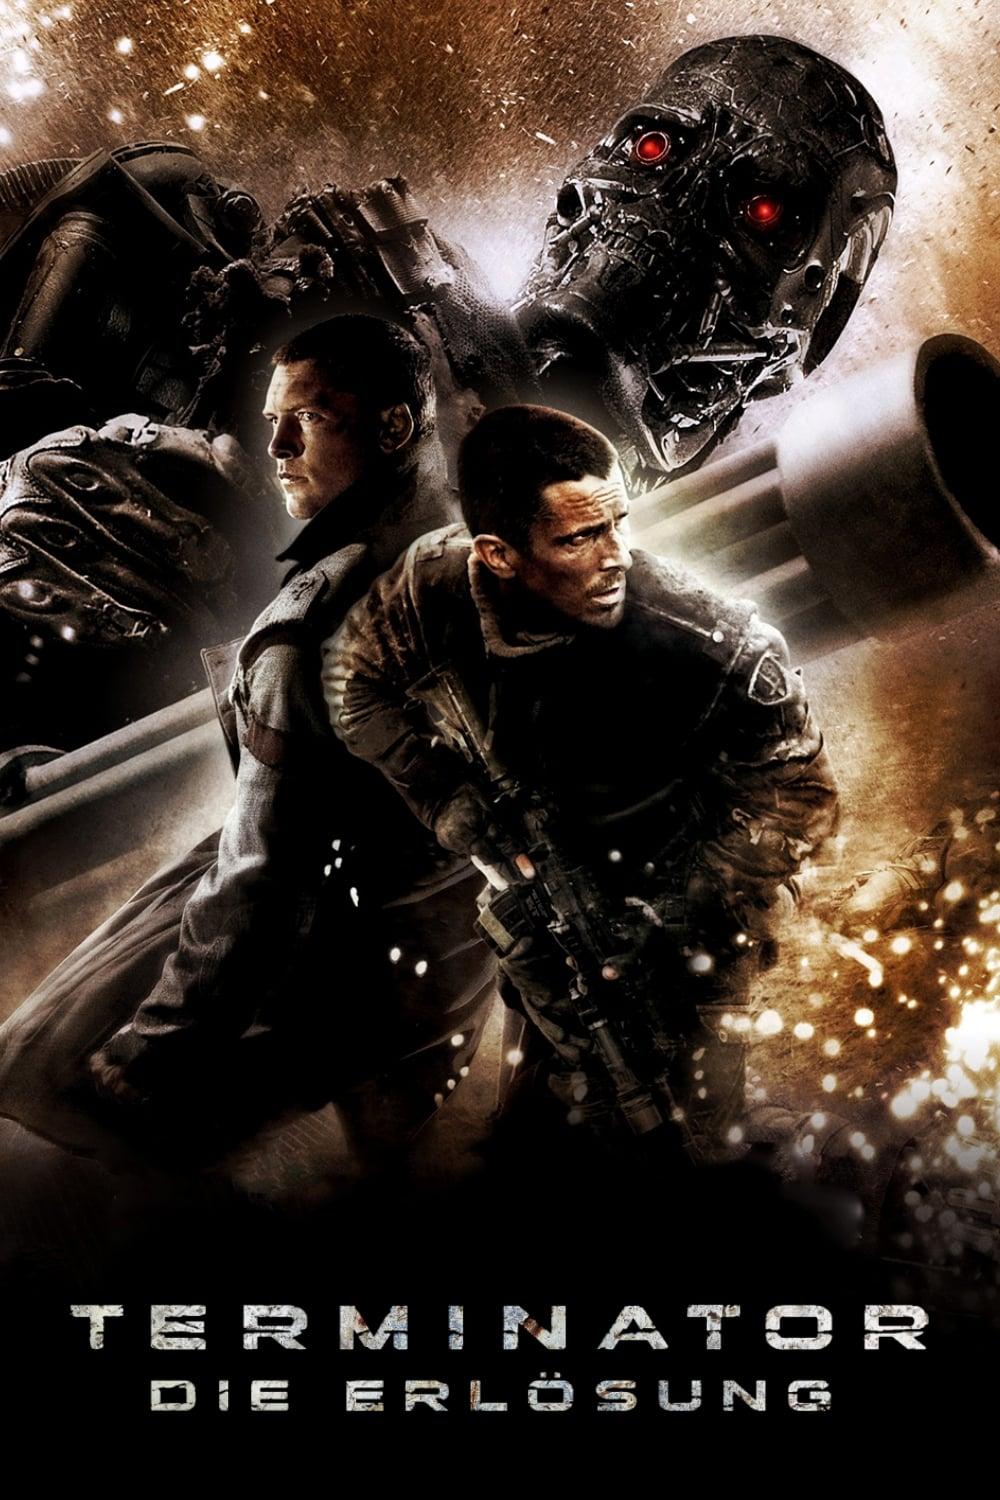 Terminator: Die Erlösung poster